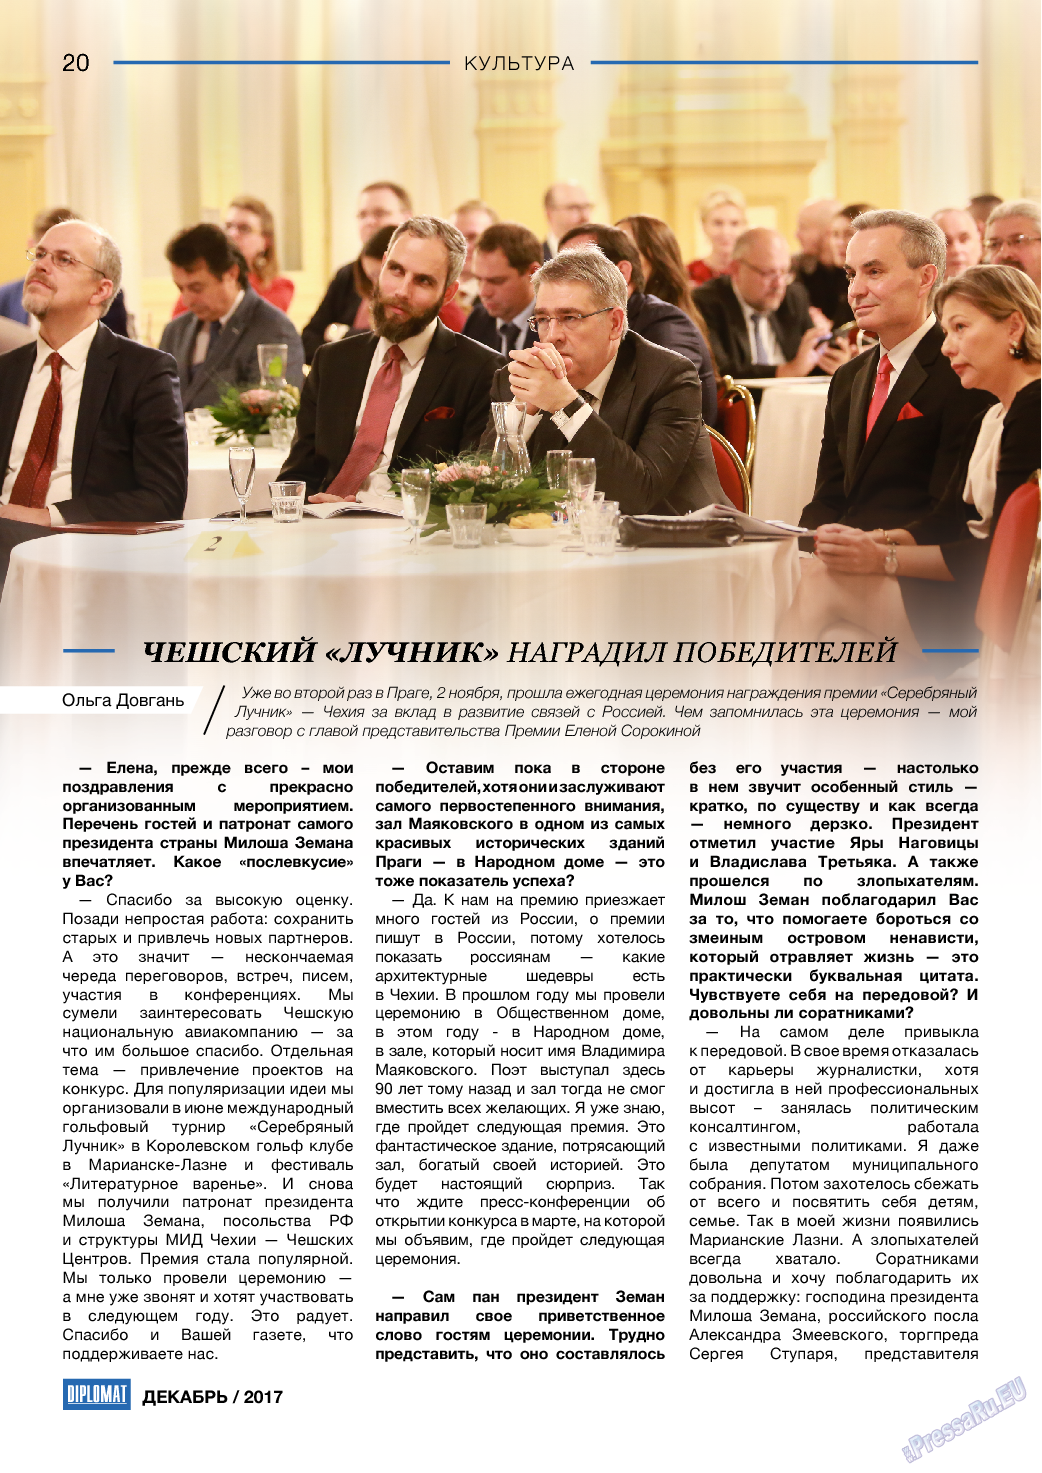 Diplomat, газета. 2017 №99 стр.20